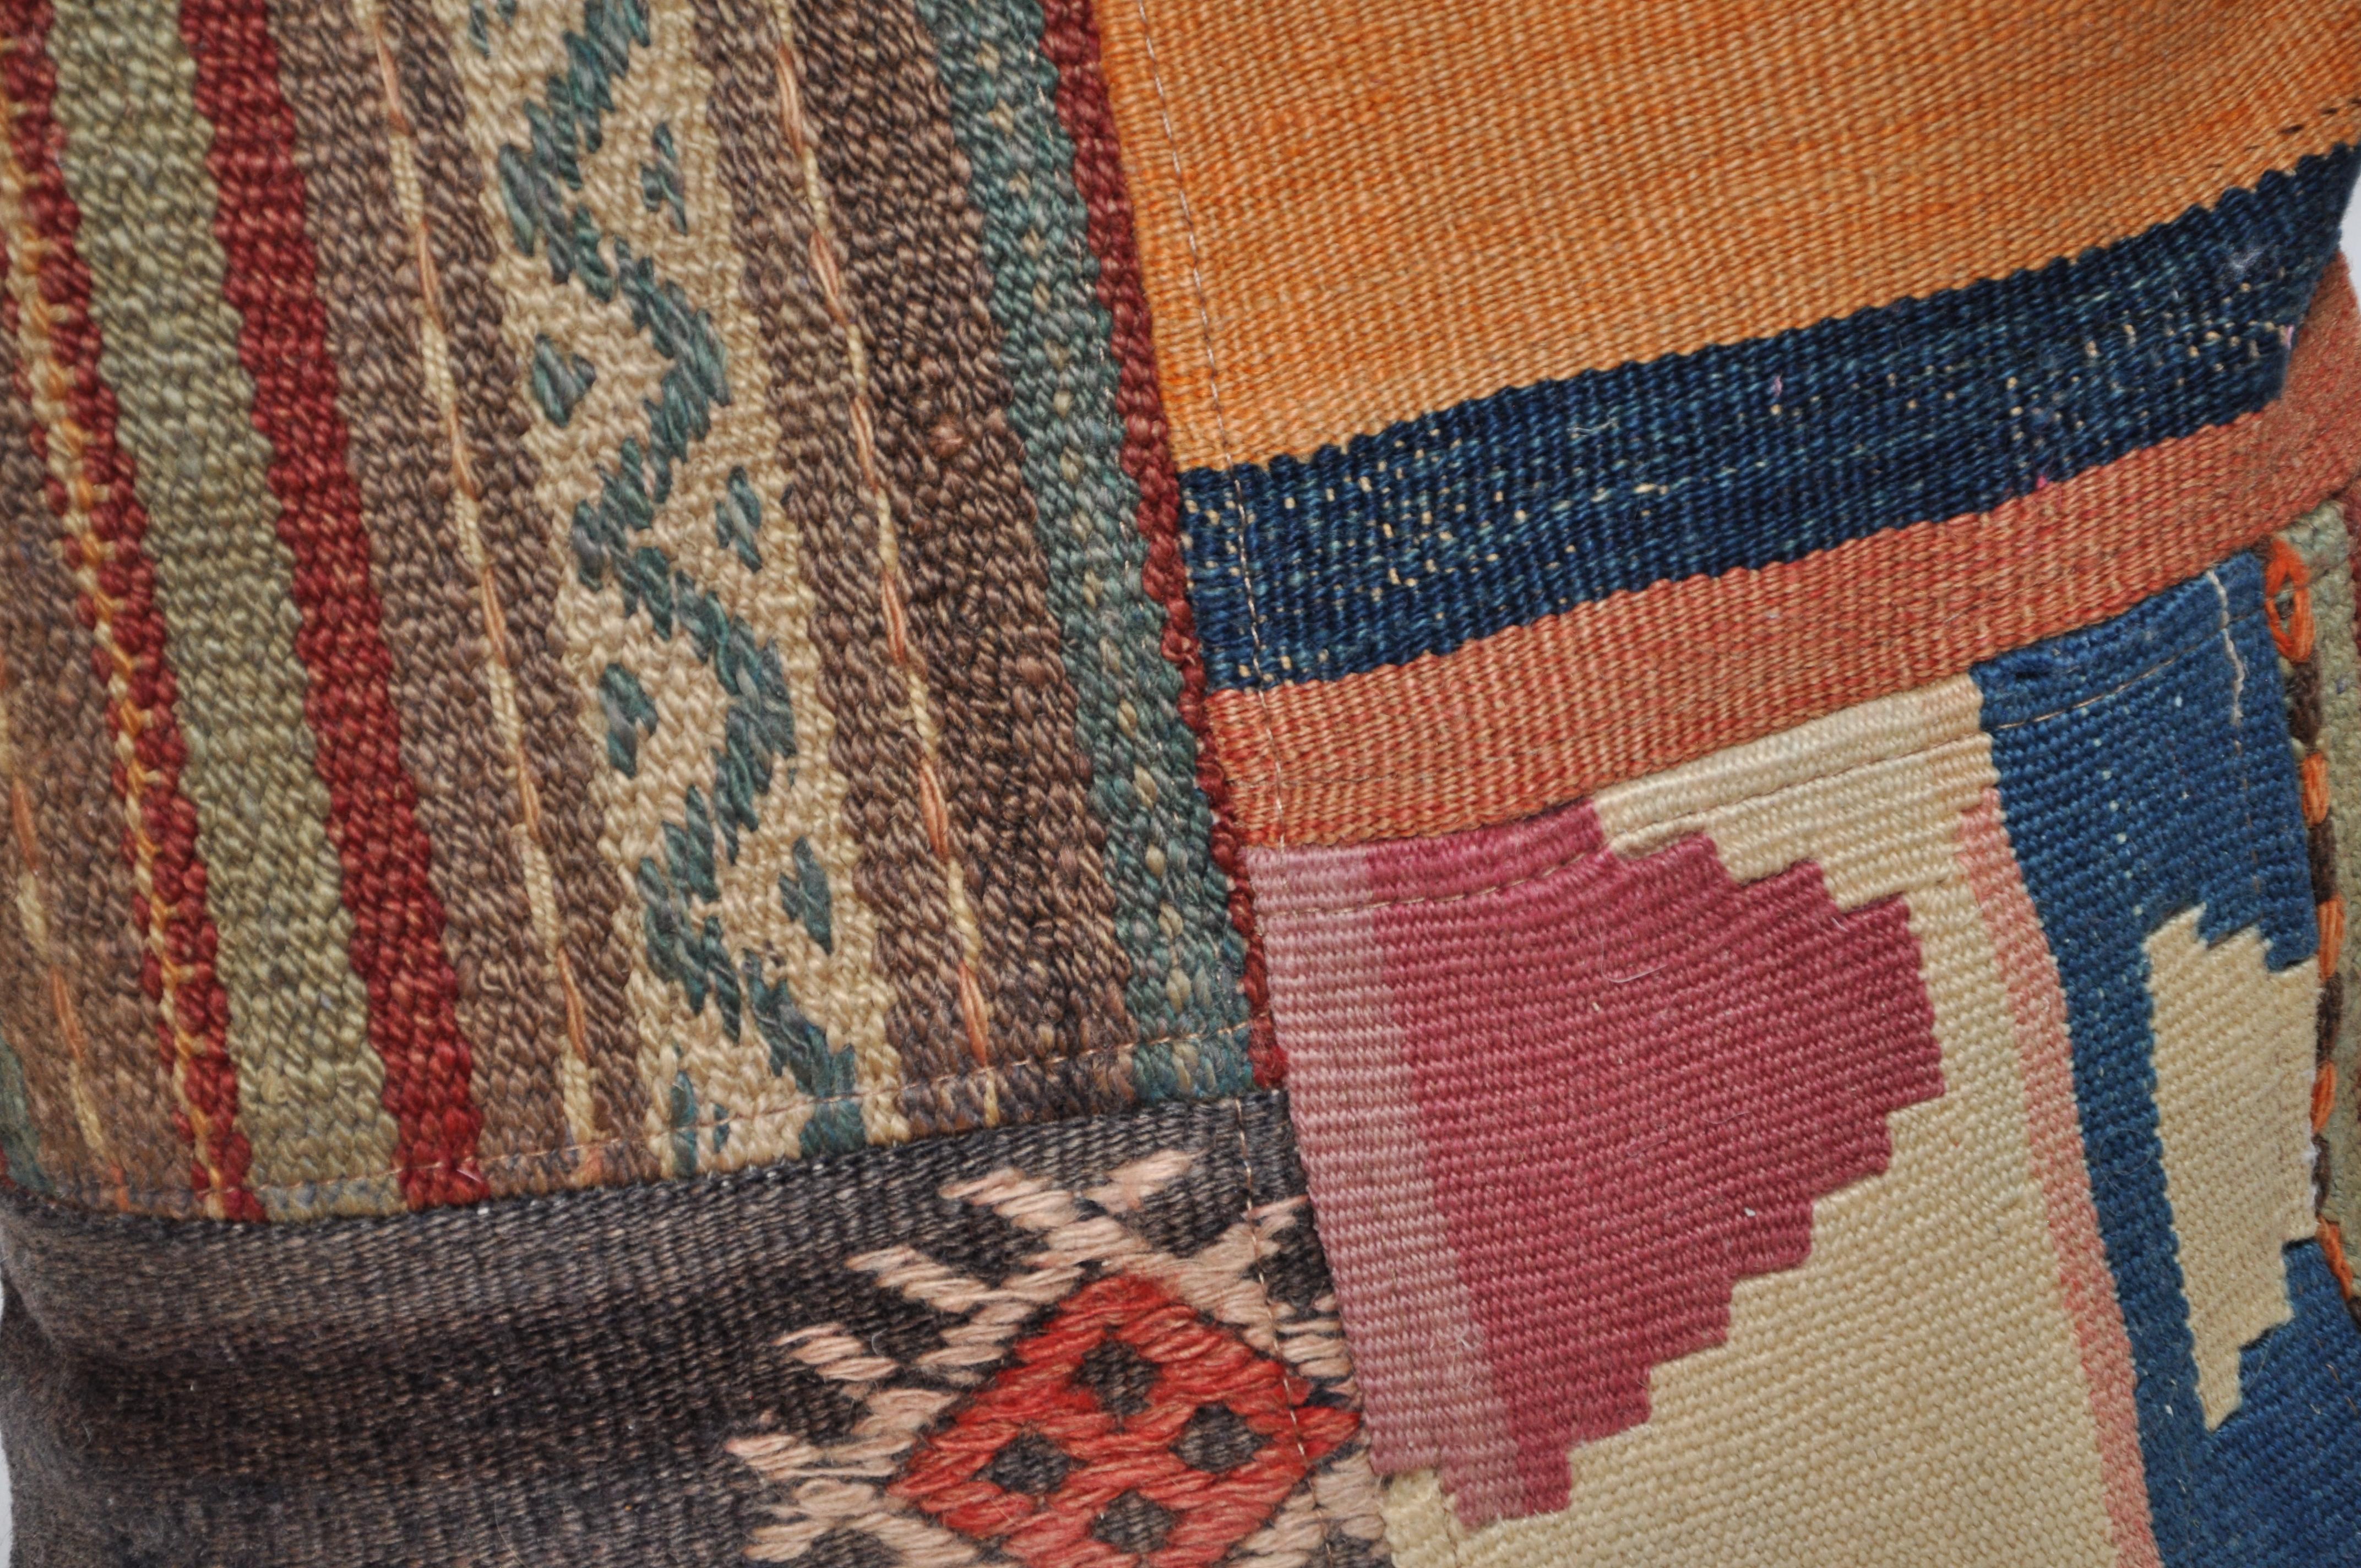 Coussin de luxe créé à partir d'un exquis morceau de tapis kilim vintage combiné à du lin irlandais par la créatrice irlandaise Katie Larmour. Unique en son genre. 

Dans des rayures riches, chaudes et spectaculaires de rouge rouille orangé et de